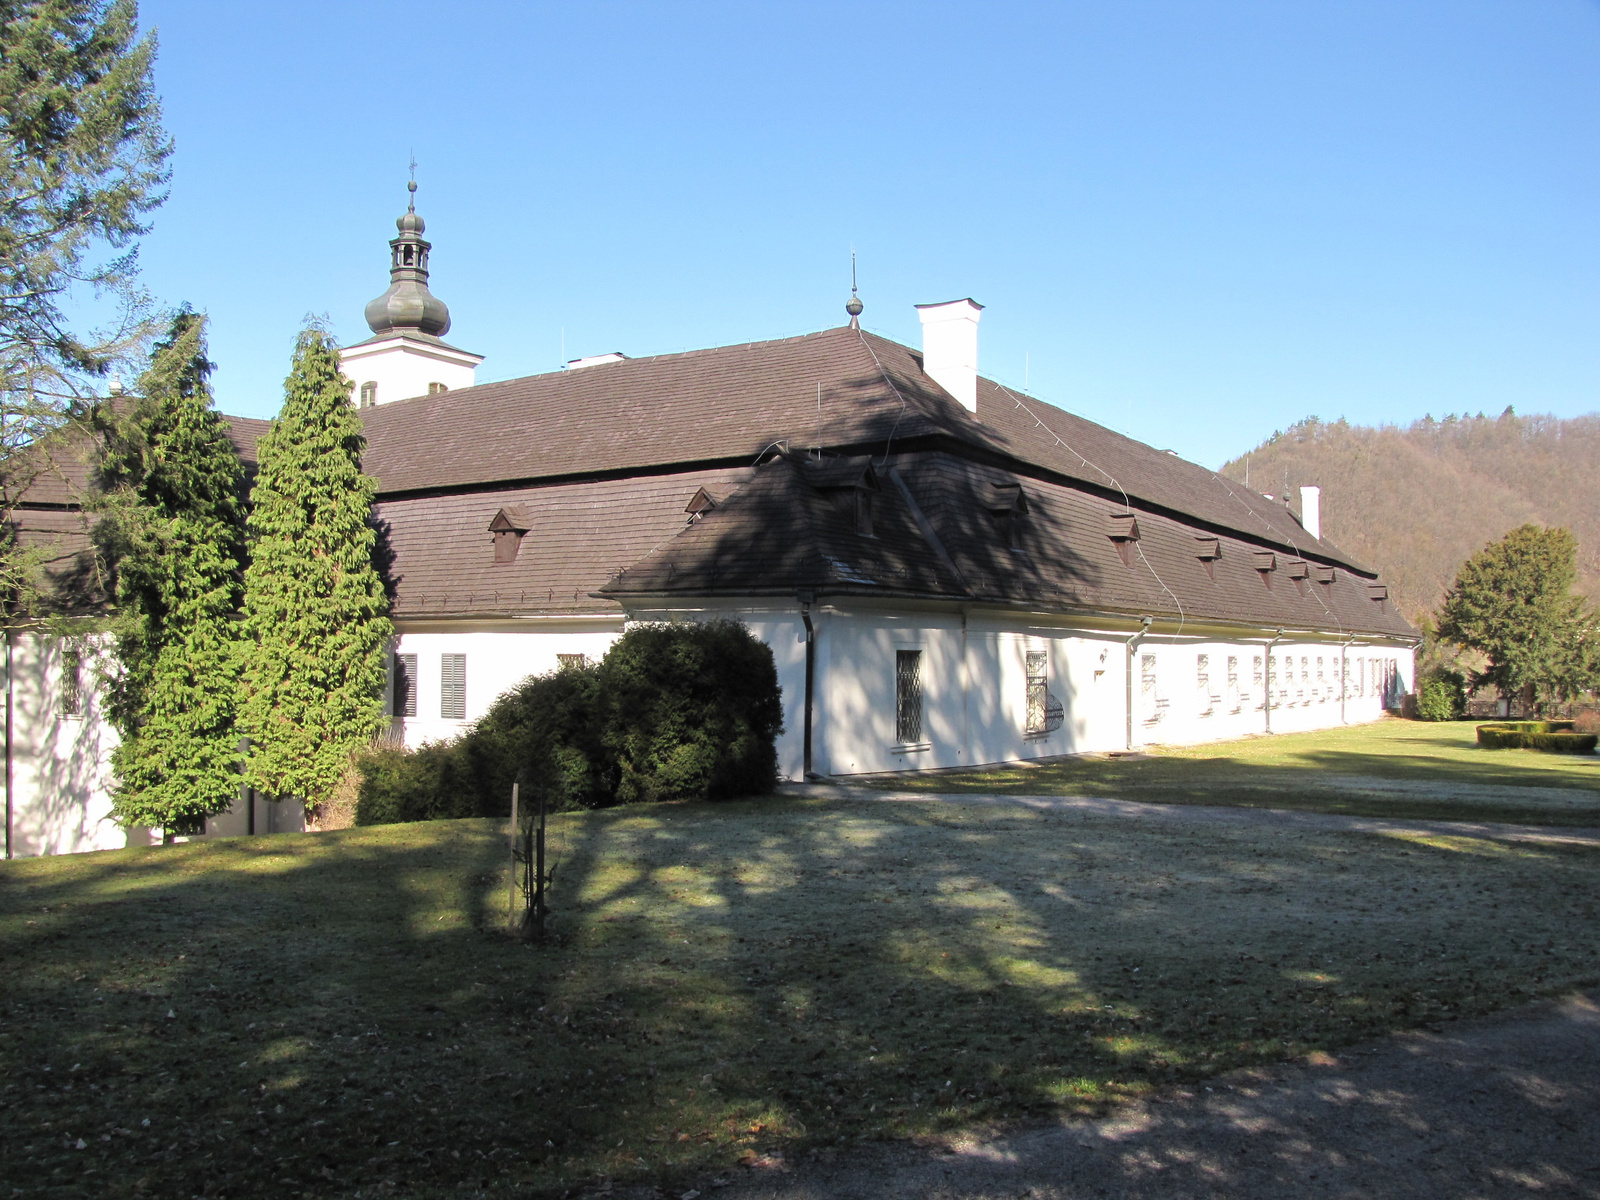 Szentantal (Svätý Anton), Koháry - Coburg kastély, SzG3